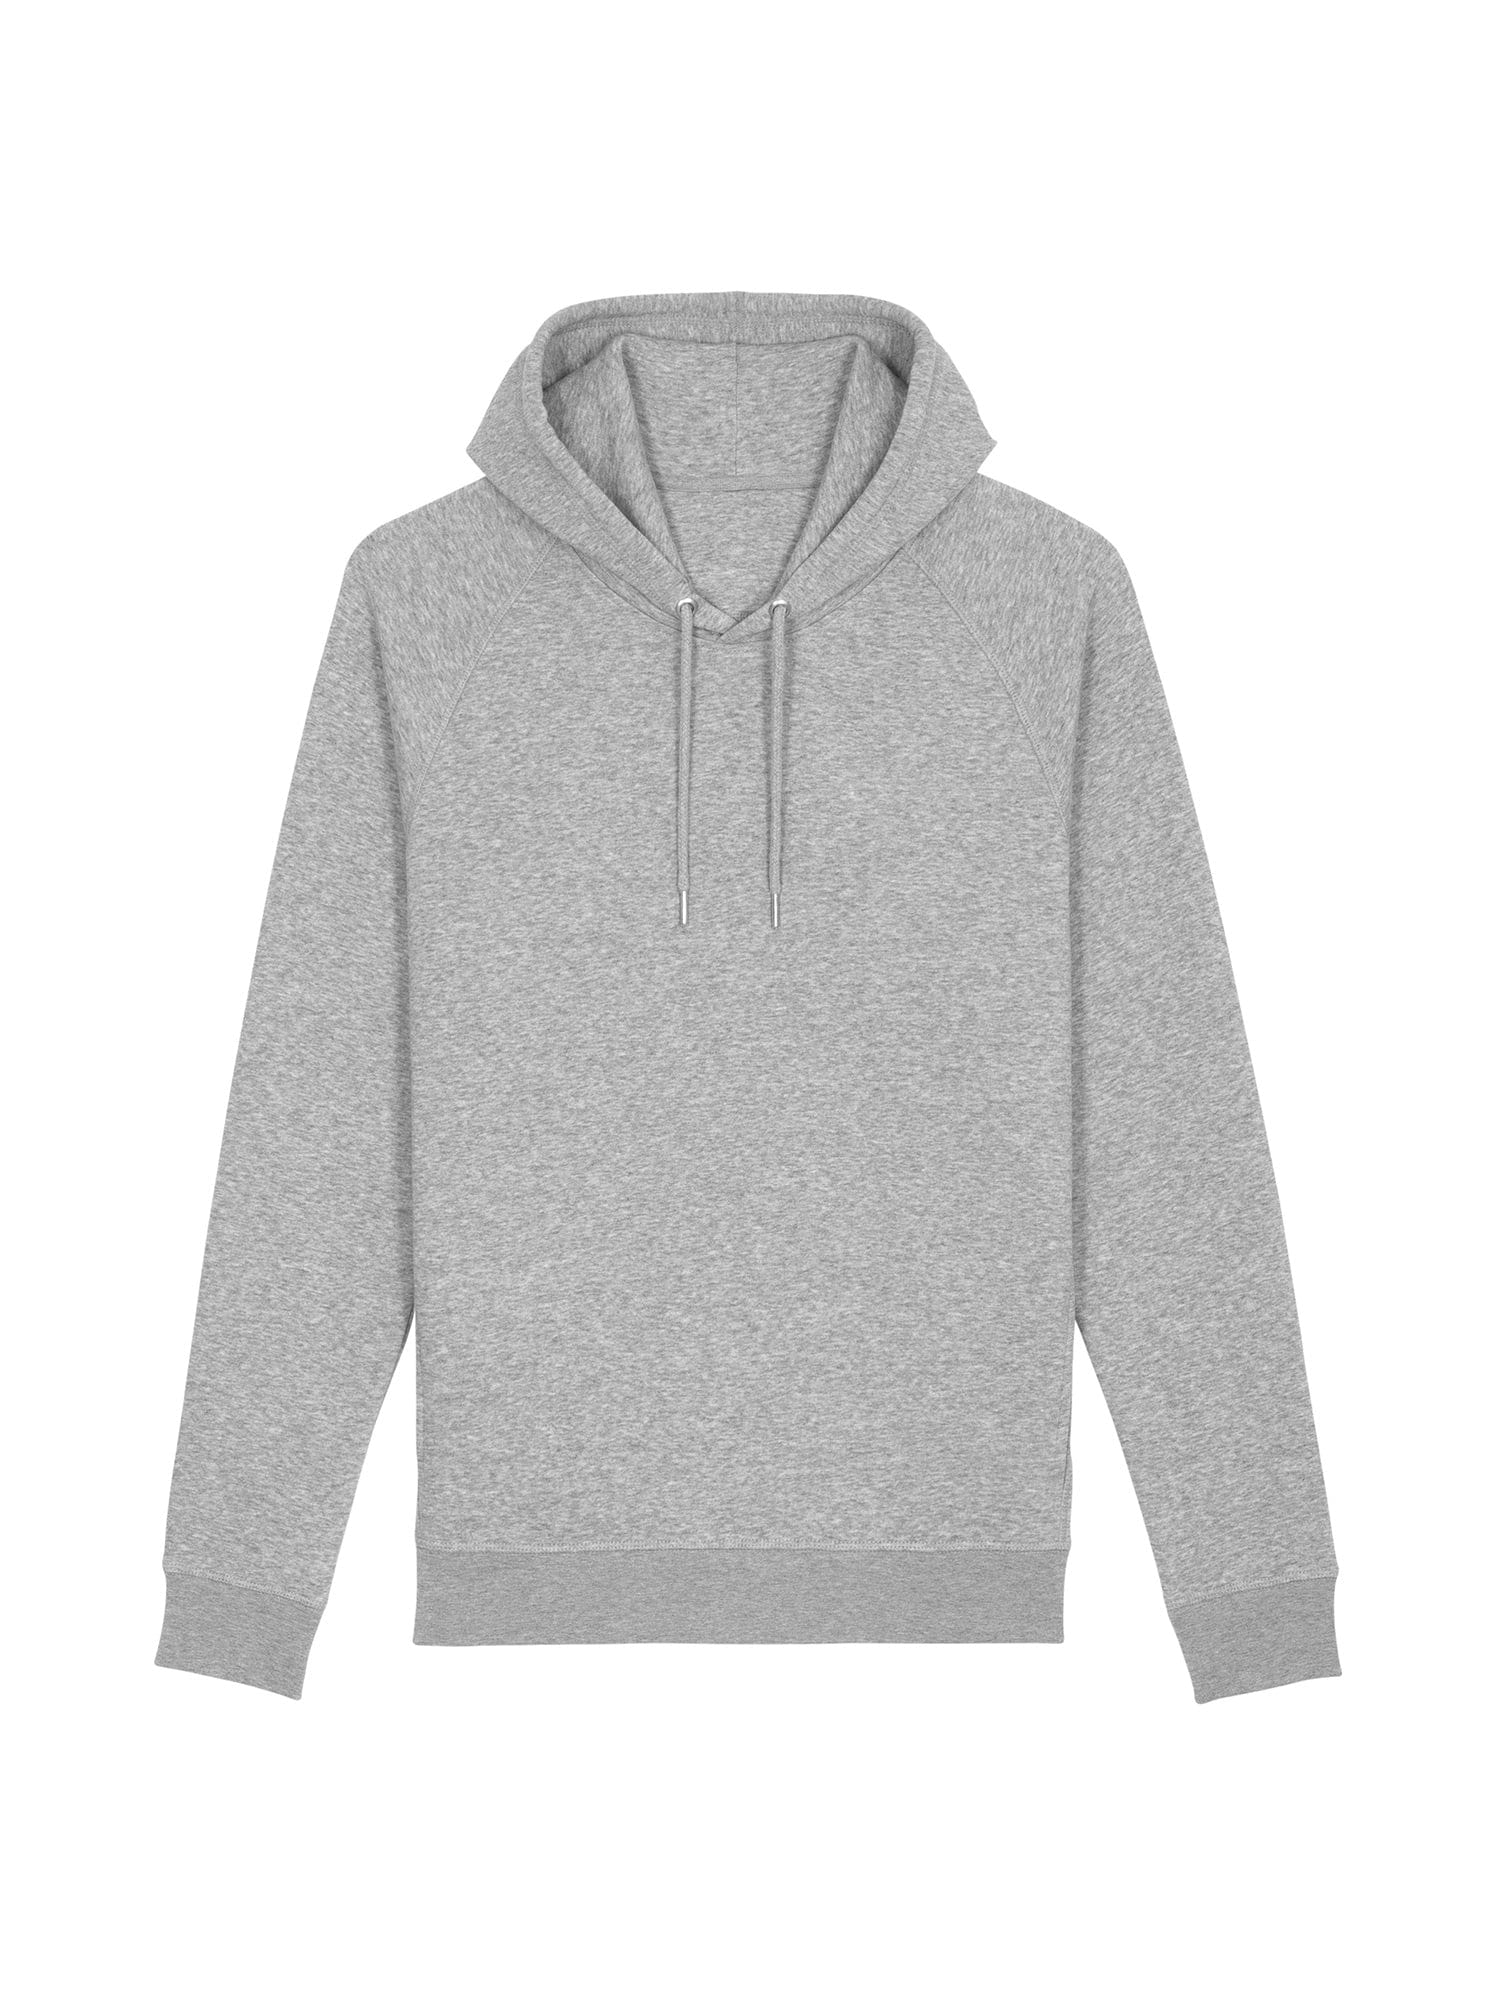 stanley stella unisex organic hoodie stsu824 portait heather grey front flat lay